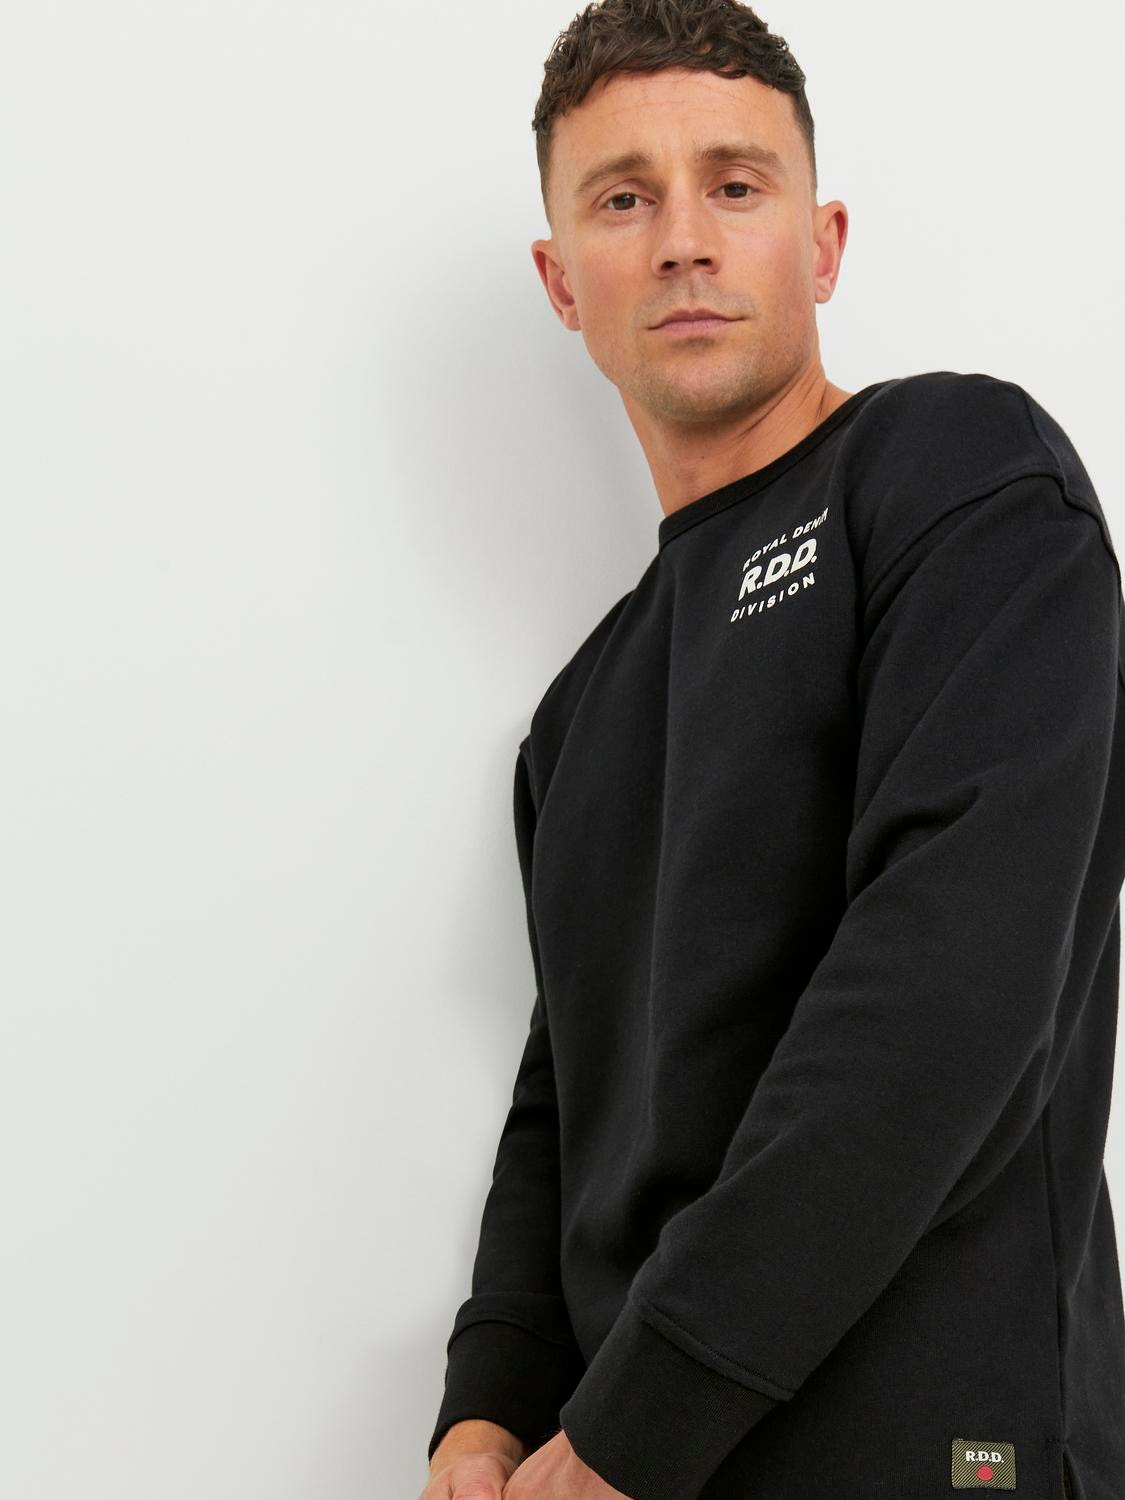 Jack & Jones RDD Gedrukt Sweatshirt met ronde hals -Black - 12243501